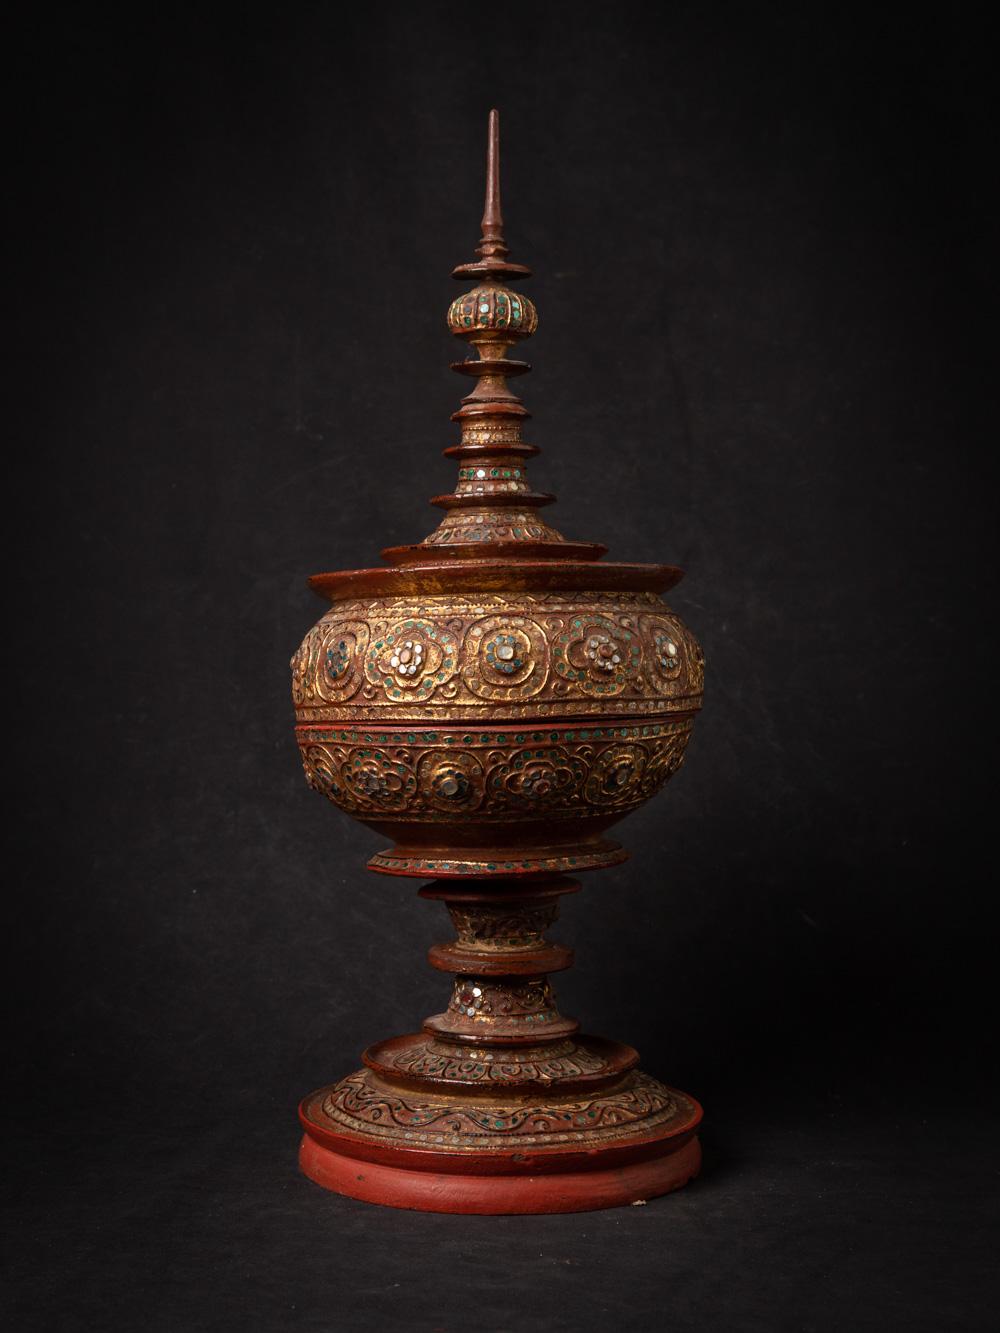 Das antike birmanische Opfergefäß aus Holz ist ein bemerkenswertes und kulturell bedeutendes Artefakt aus Birma. Dieses aus Holz gefertigte und mit 24-karätigem Gold vergoldete Opfergefäß hat eine Höhe von 53,5 cm und einen Durchmesser von 21,5 cm.